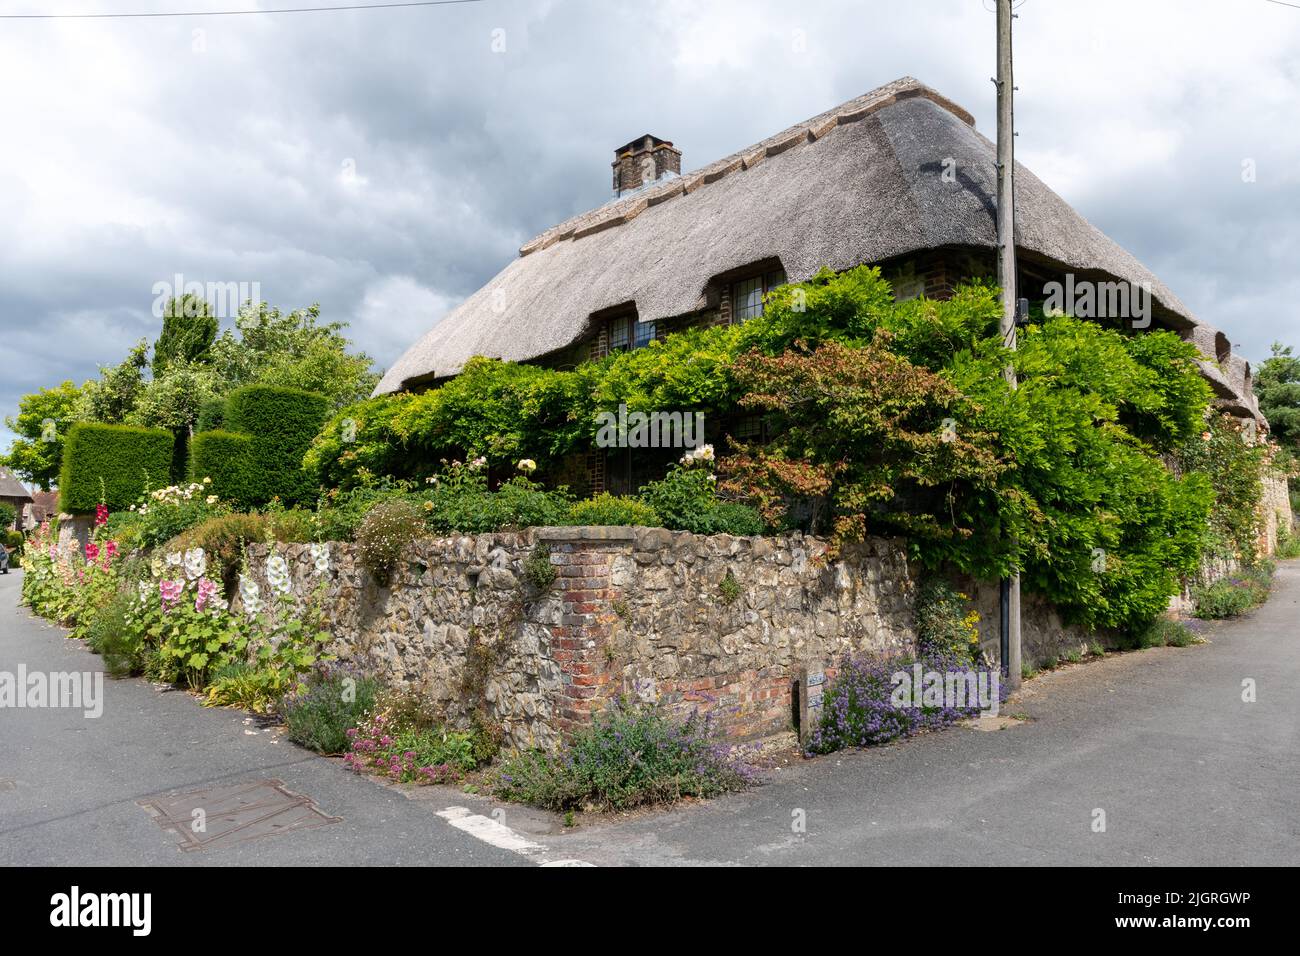 El pueblo de Amberley, West Sussex - 'El pueblo más bonito de Sussex' Foto de stock